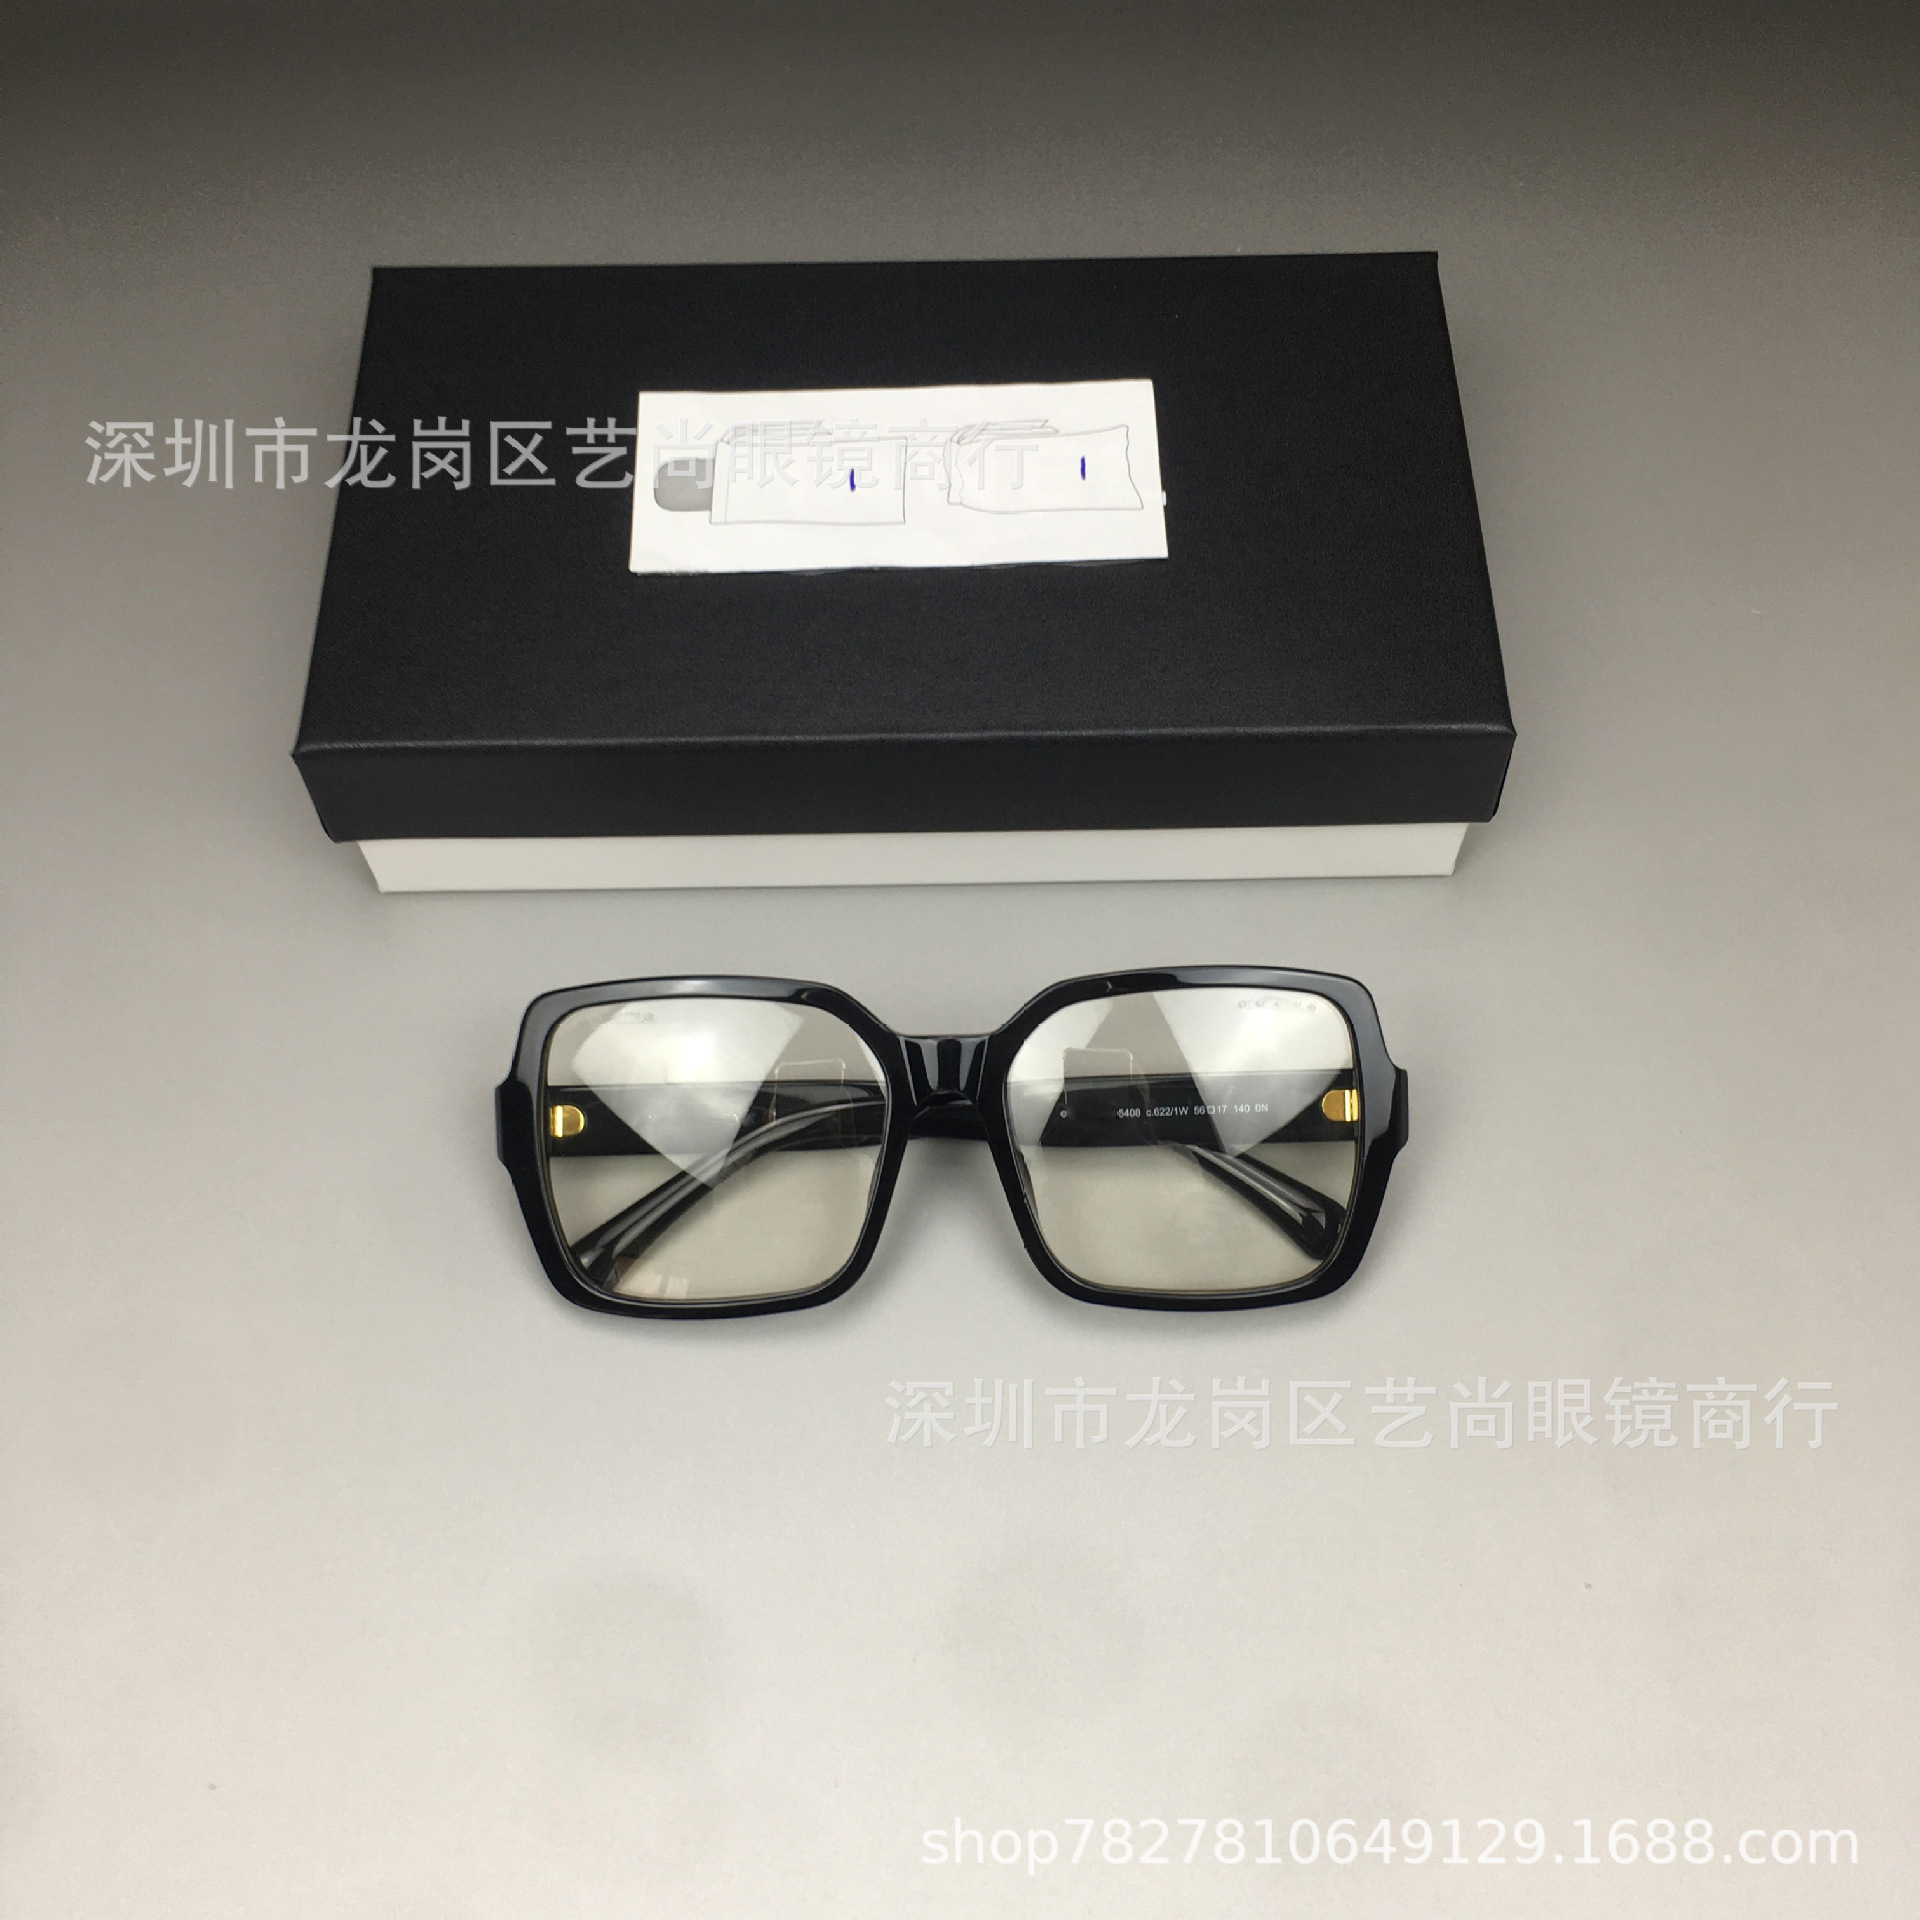 小香平光镜框5408素颜眼镜框架板材大方框显脸小防蓝光近视眼镜女